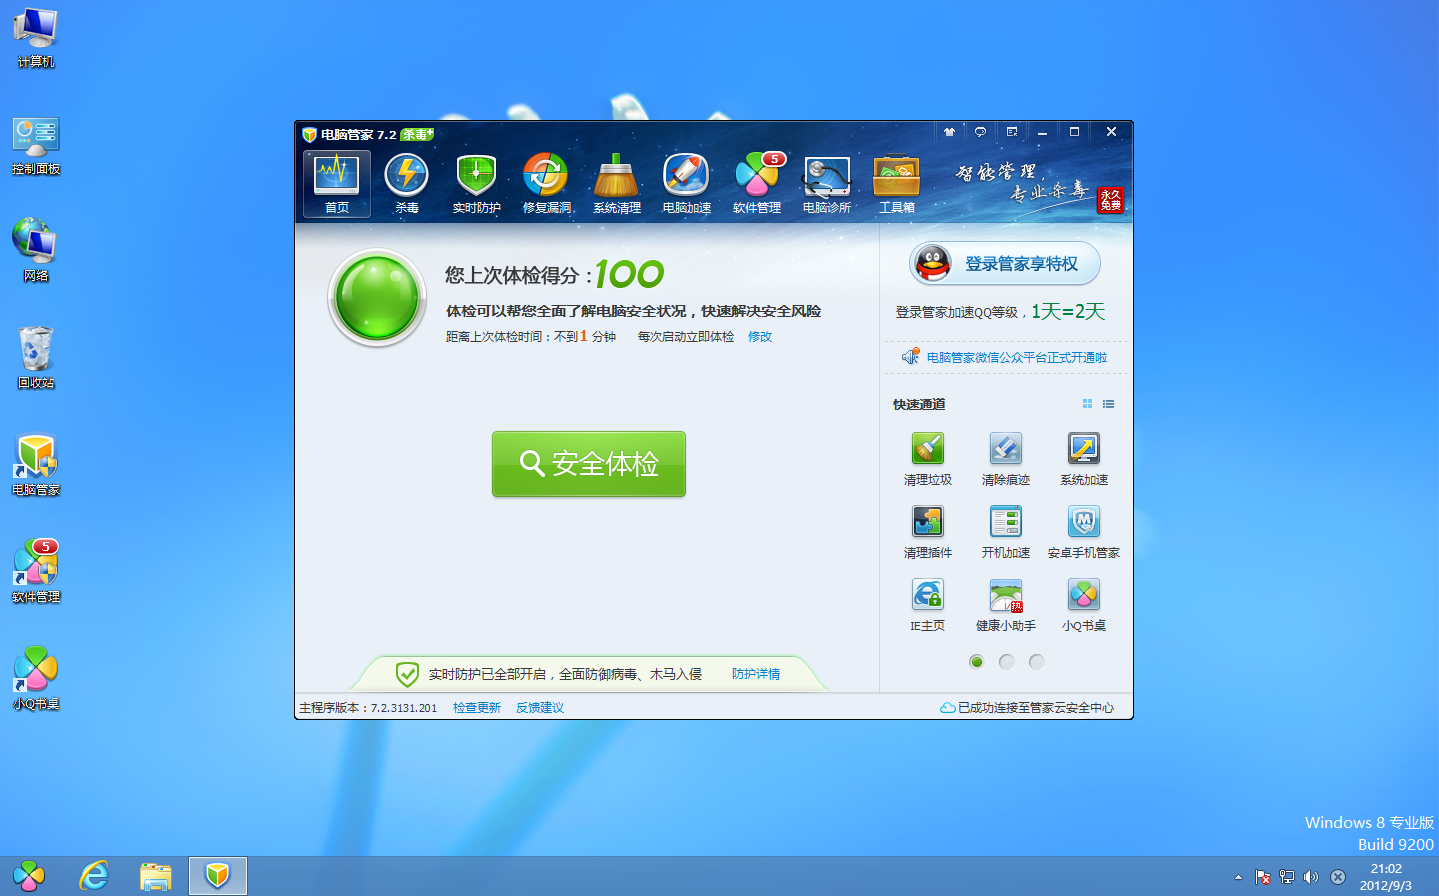 QQ电脑管家 2合1杀毒版 v8.4(10040) 全面兼容windows8 中文官方